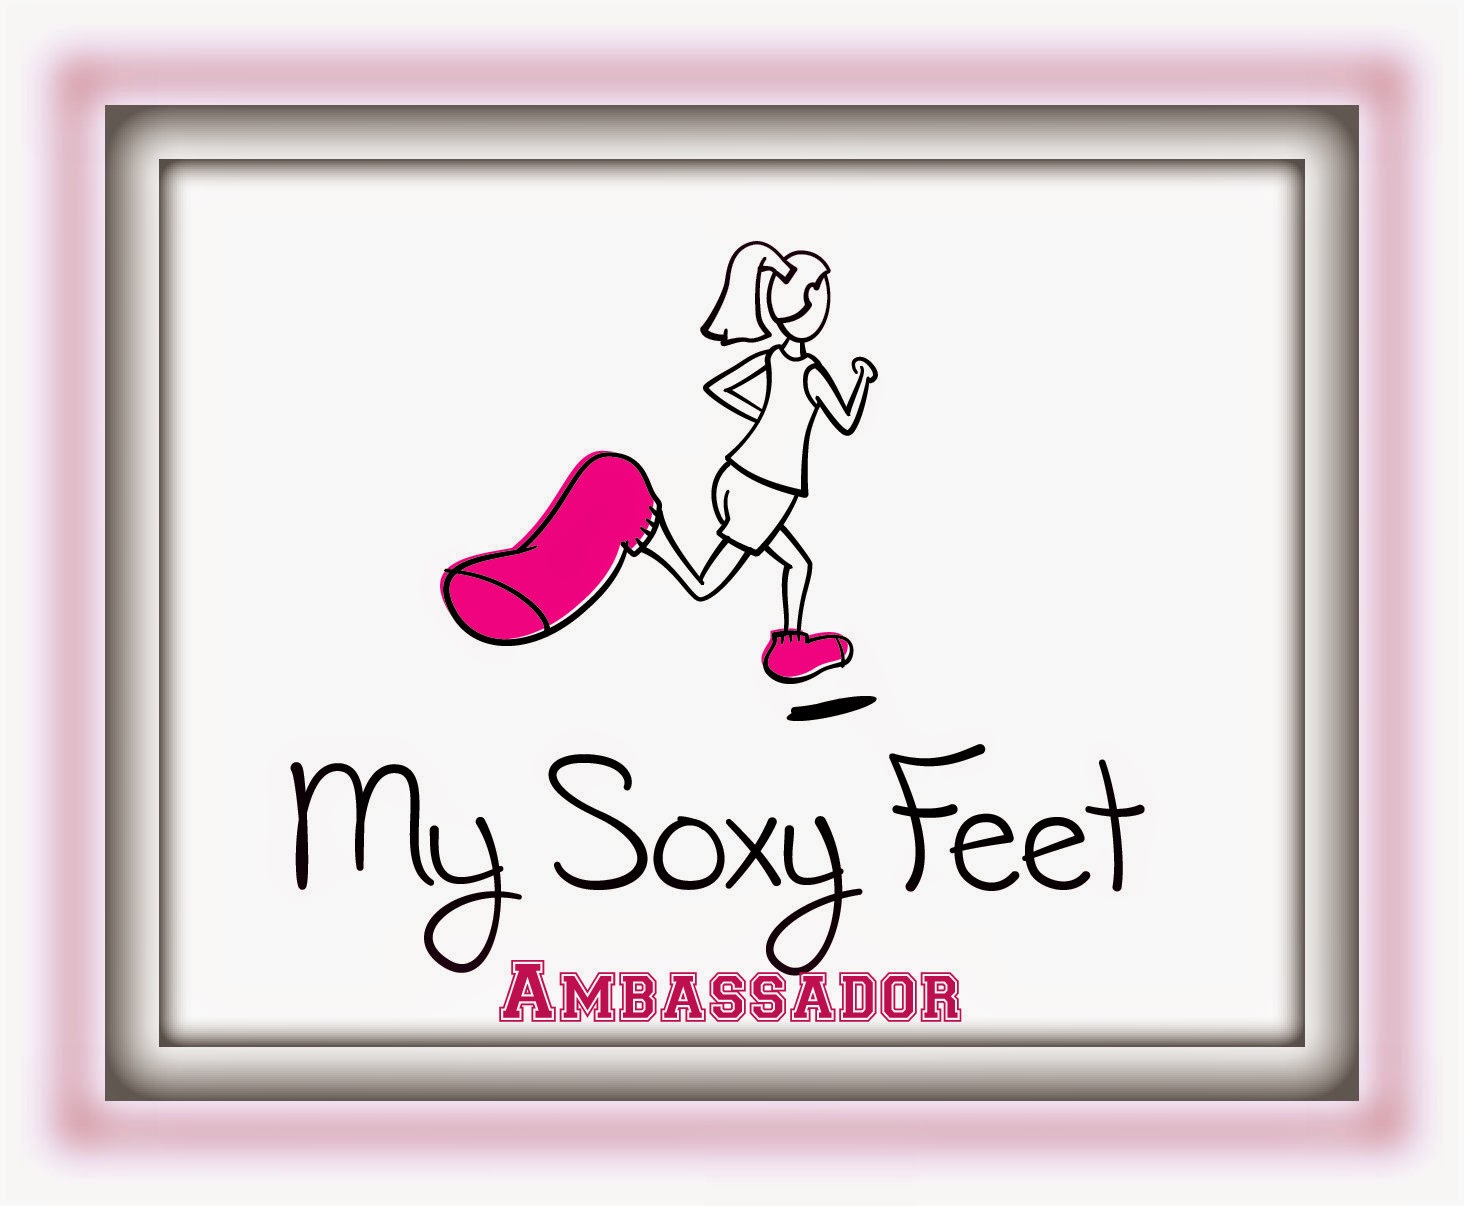 My Soxy Feet Ambassador